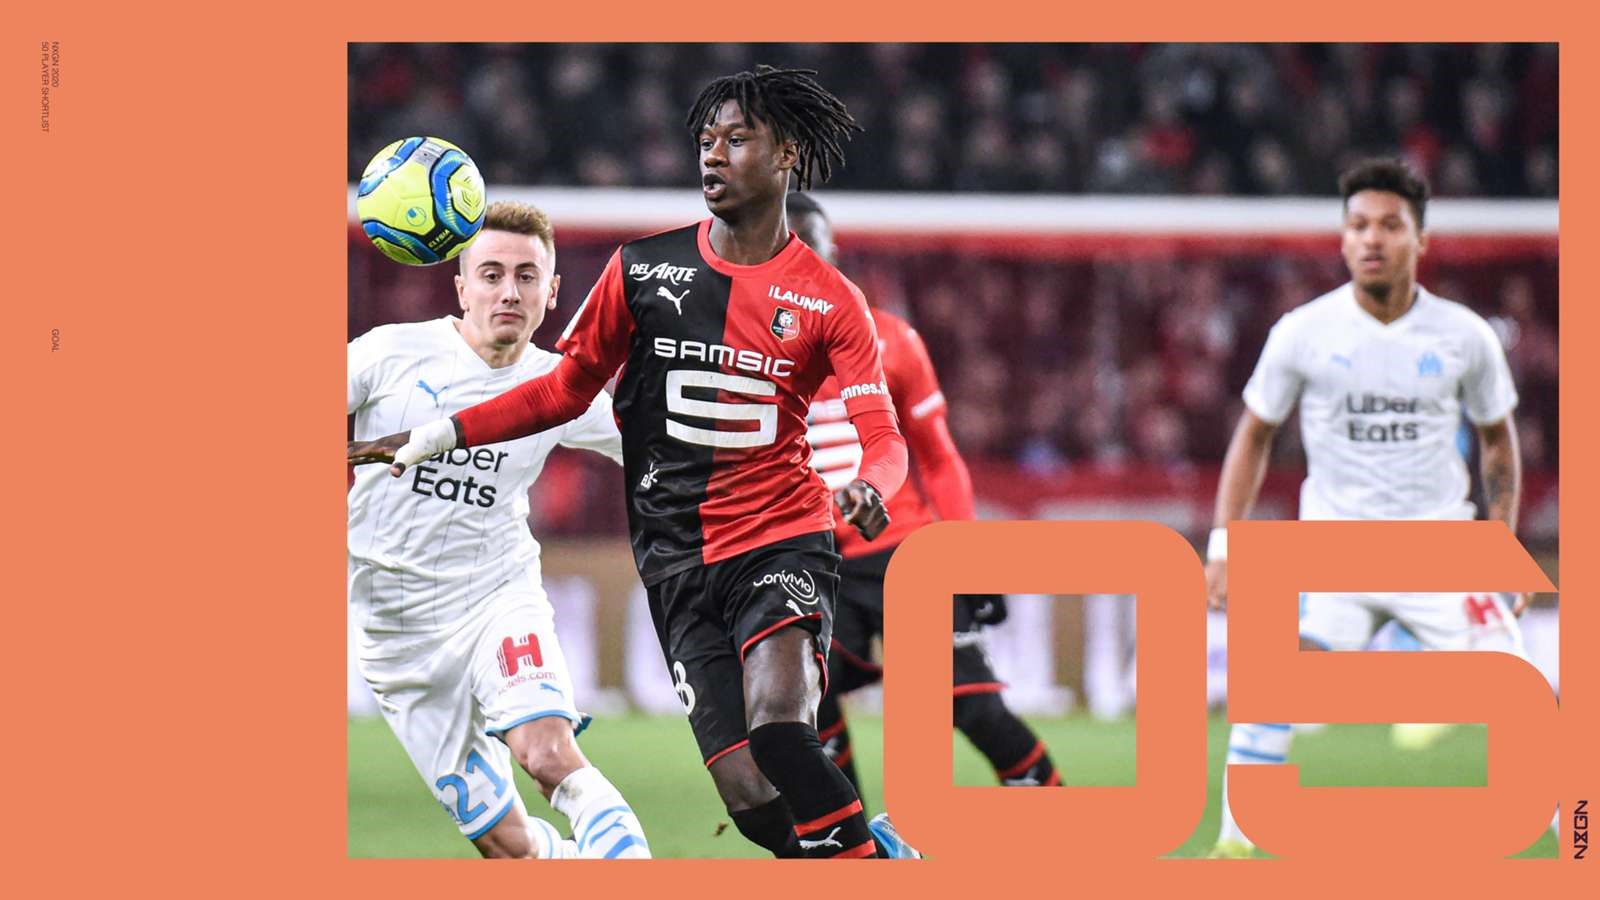 5.Eduardo Camavinga (Rennes). Vừa bước qua tuổi 17 hồi tháng 11.2019, nhưng Camavinga đã là một nhân tố chủ chốt trong đội hình của Rennes và được triệu tập lên đội tuyển U21 Pháp.